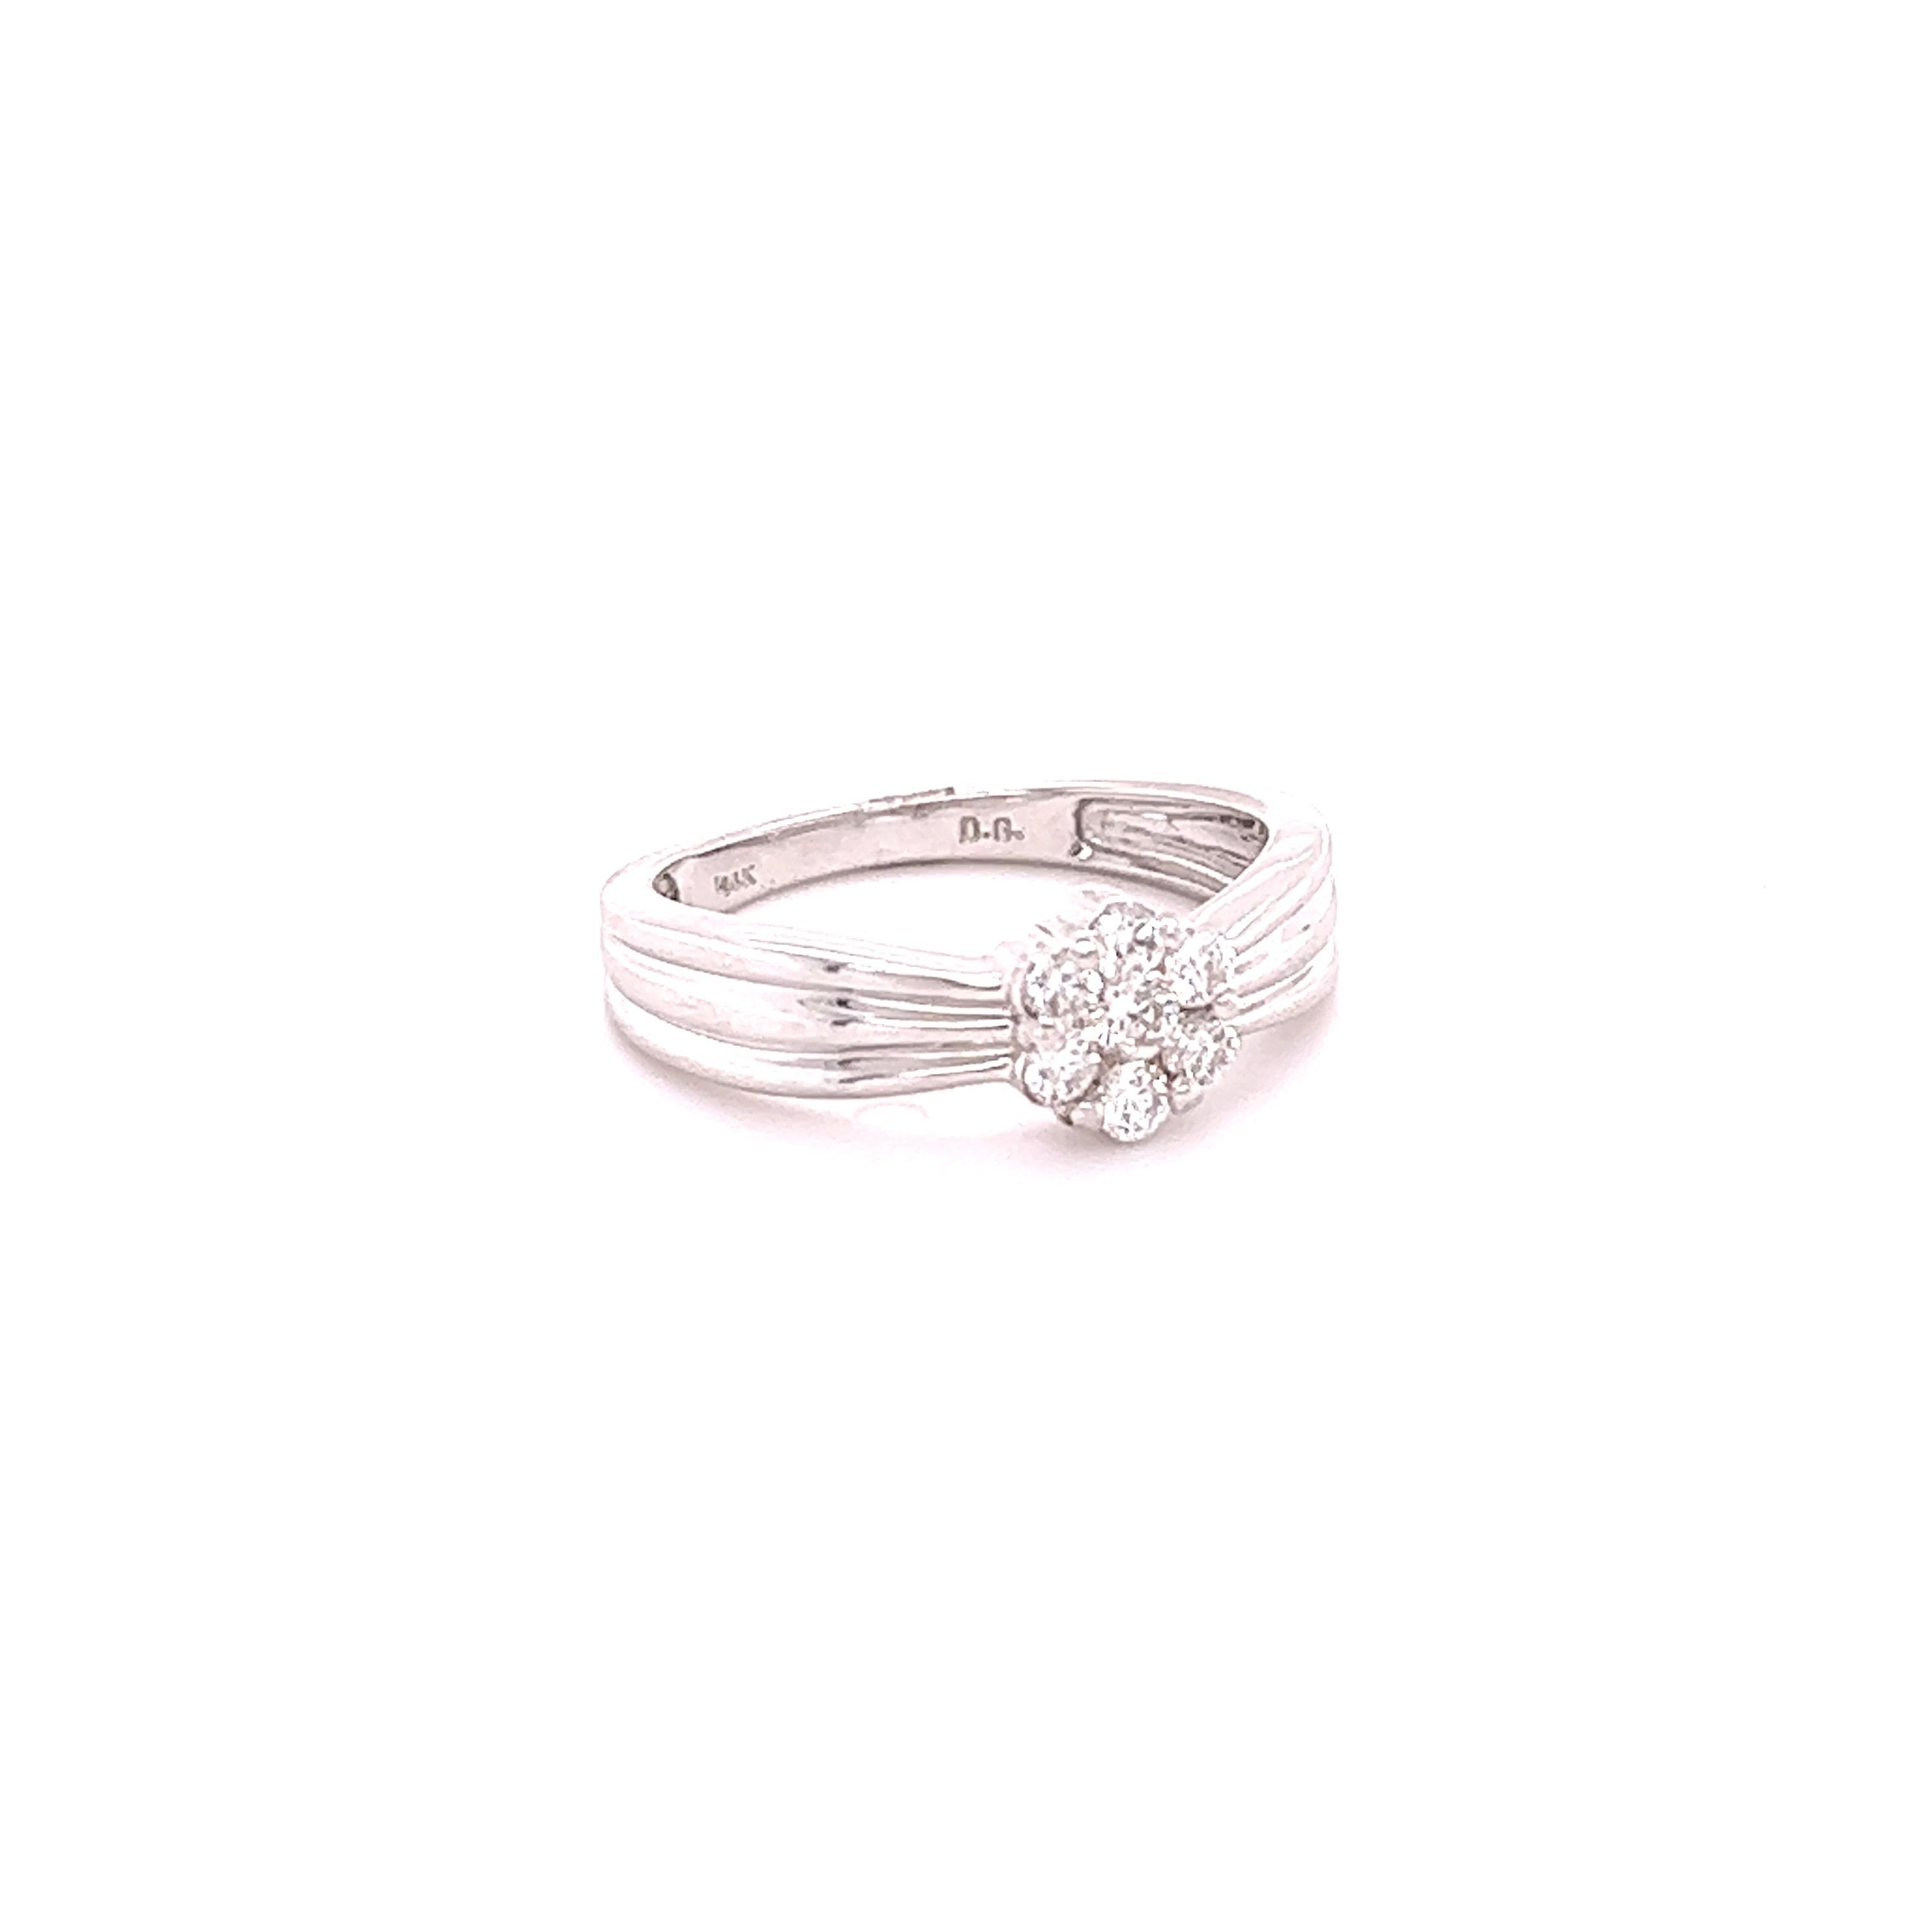 Dieser Ring hat ein Blumenmuster mit natürlichen Diamanten im Rundschliff mit einem Gewicht von 0,31 Karat. Die Reinheit und Farbe der Diamanten sind SI-F. 
Der Ring ist in 14 Karat Weißgold gefasst und hat ein ungefähres Goldgewicht von 3,4 Gramm.